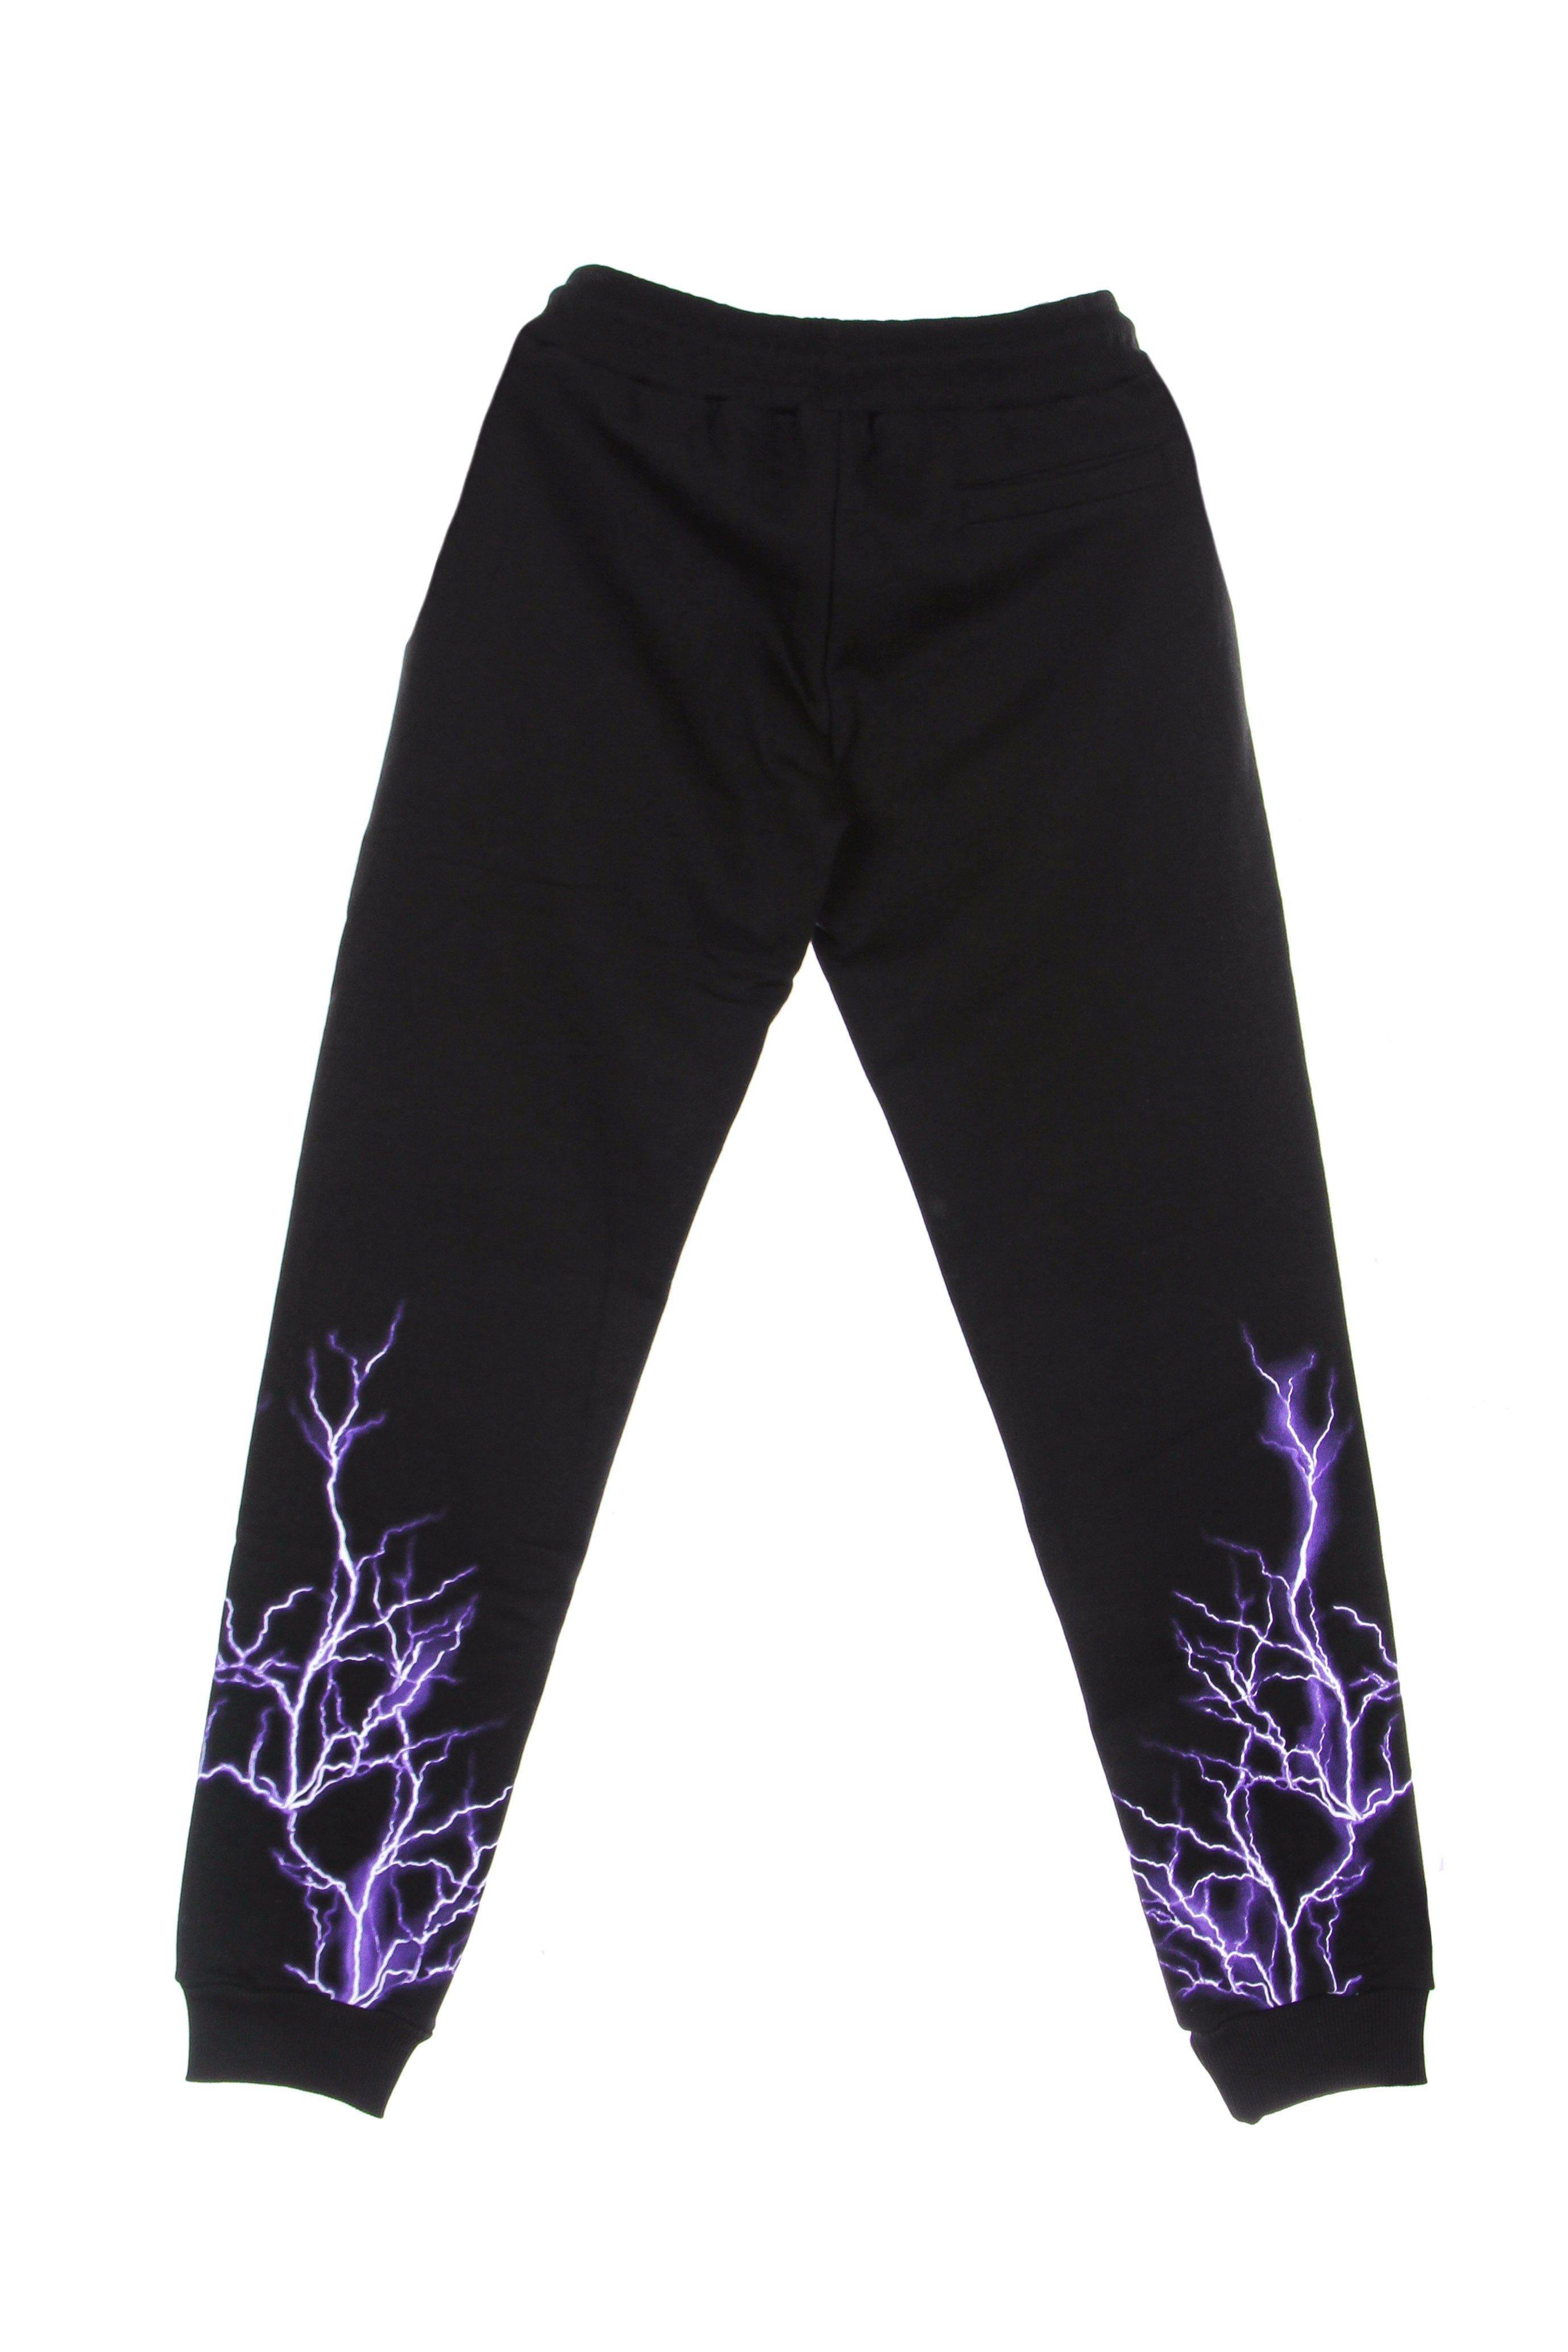 Phobia, Pantalone Tuta Leggero Uomo Purple Lightning Pants, 